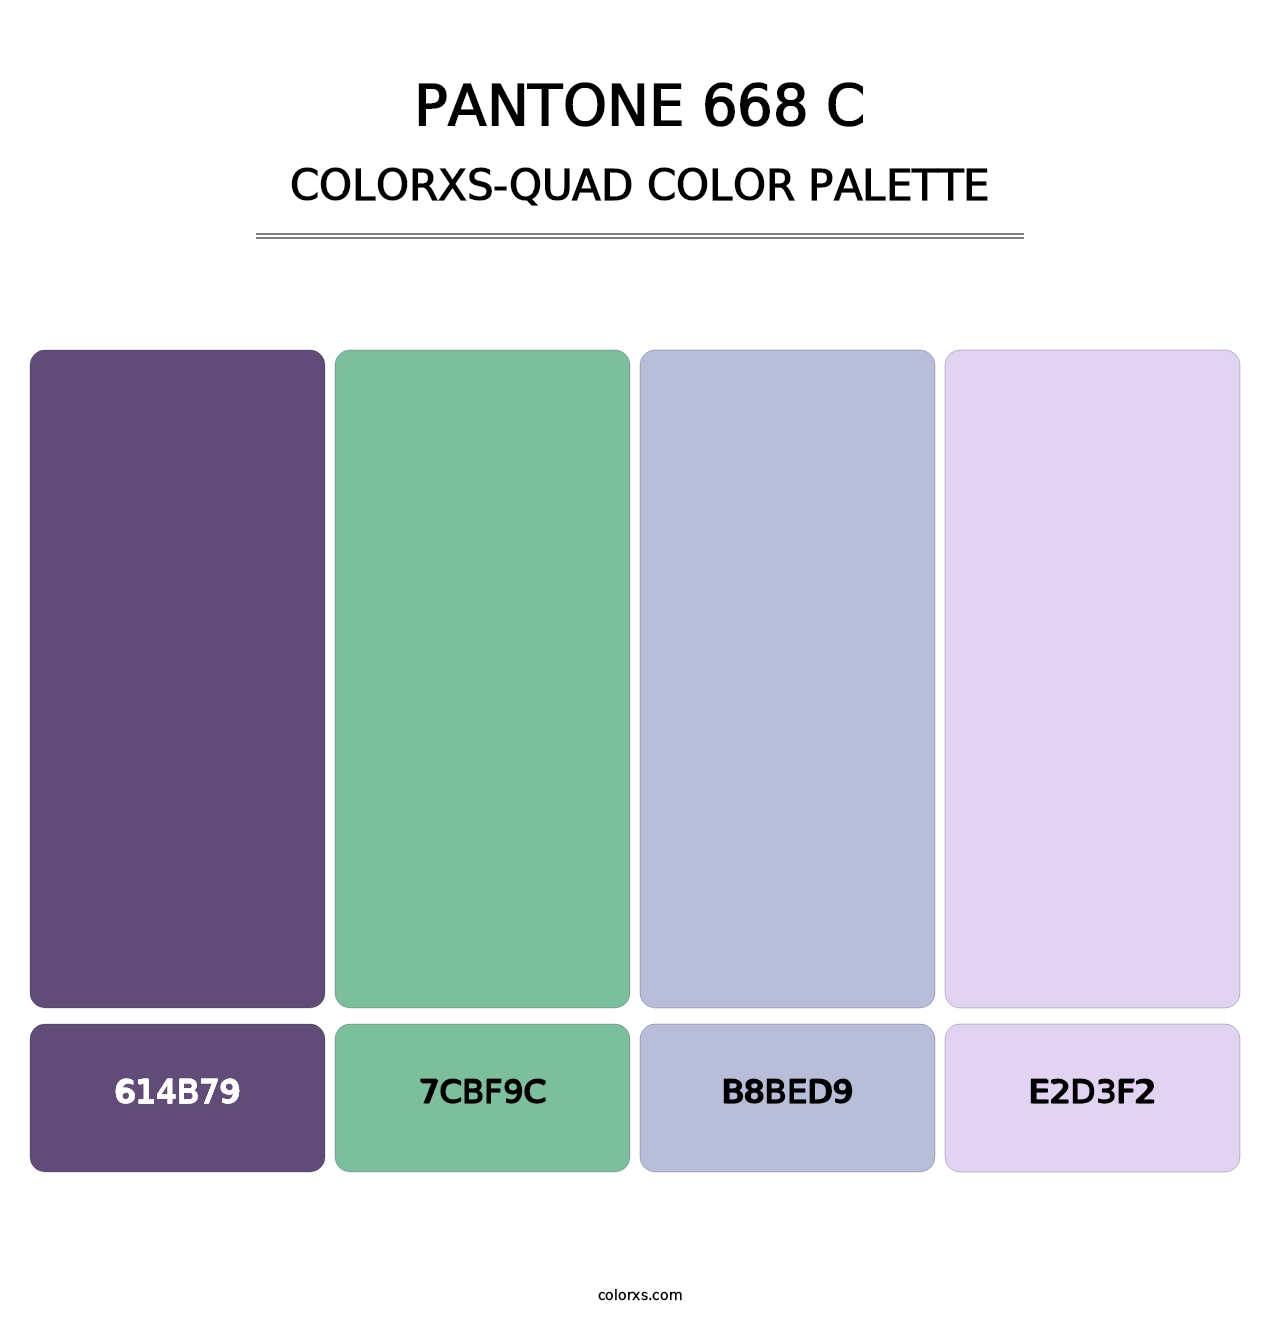 PANTONE 668 C - Colorxs Quad Palette